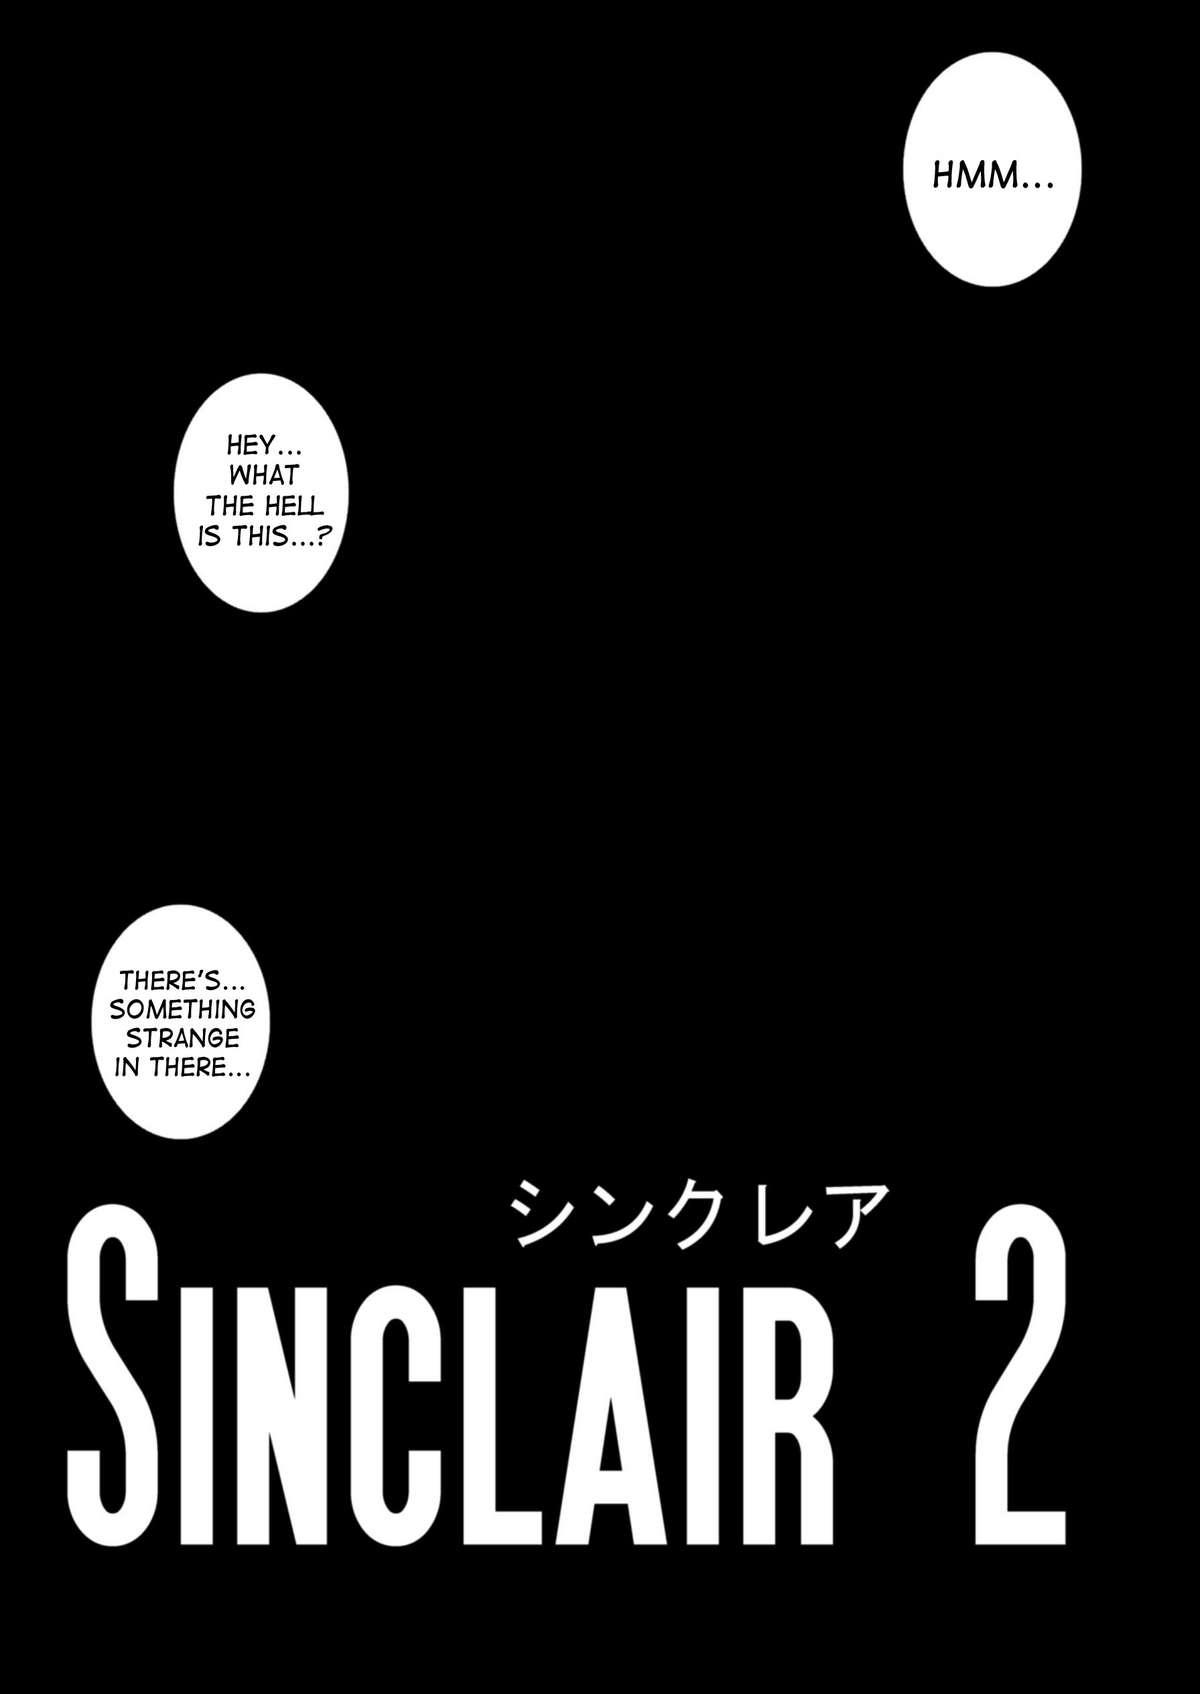 Sinclair 2 & Extra 3